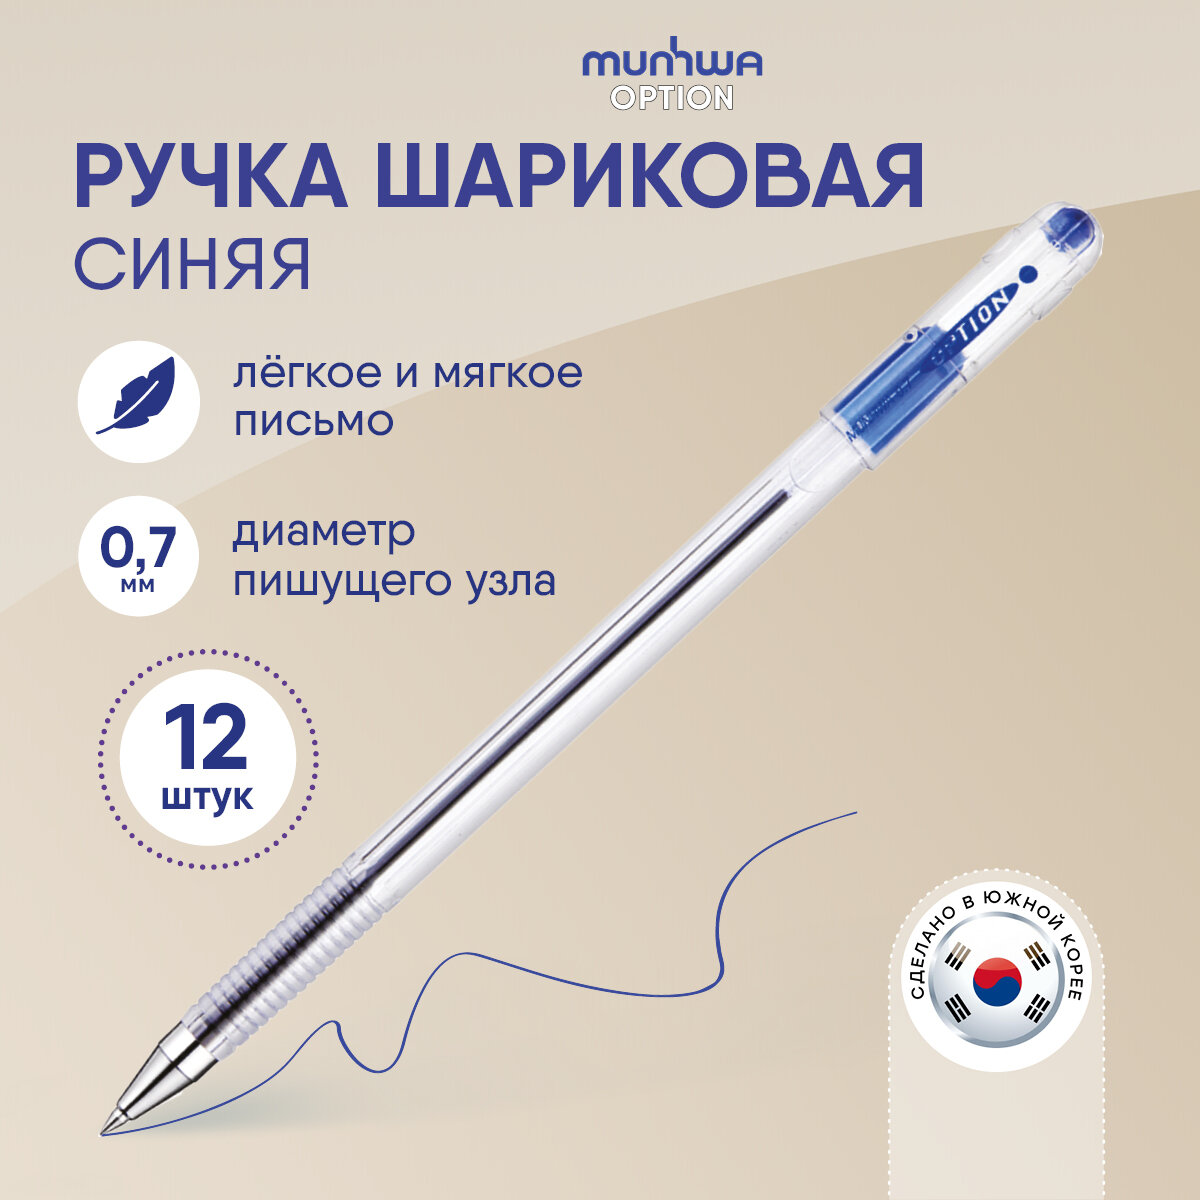 Ручка шариковая MunHwa "Option" синяя, 0,7мм, упаковка 12 шт.